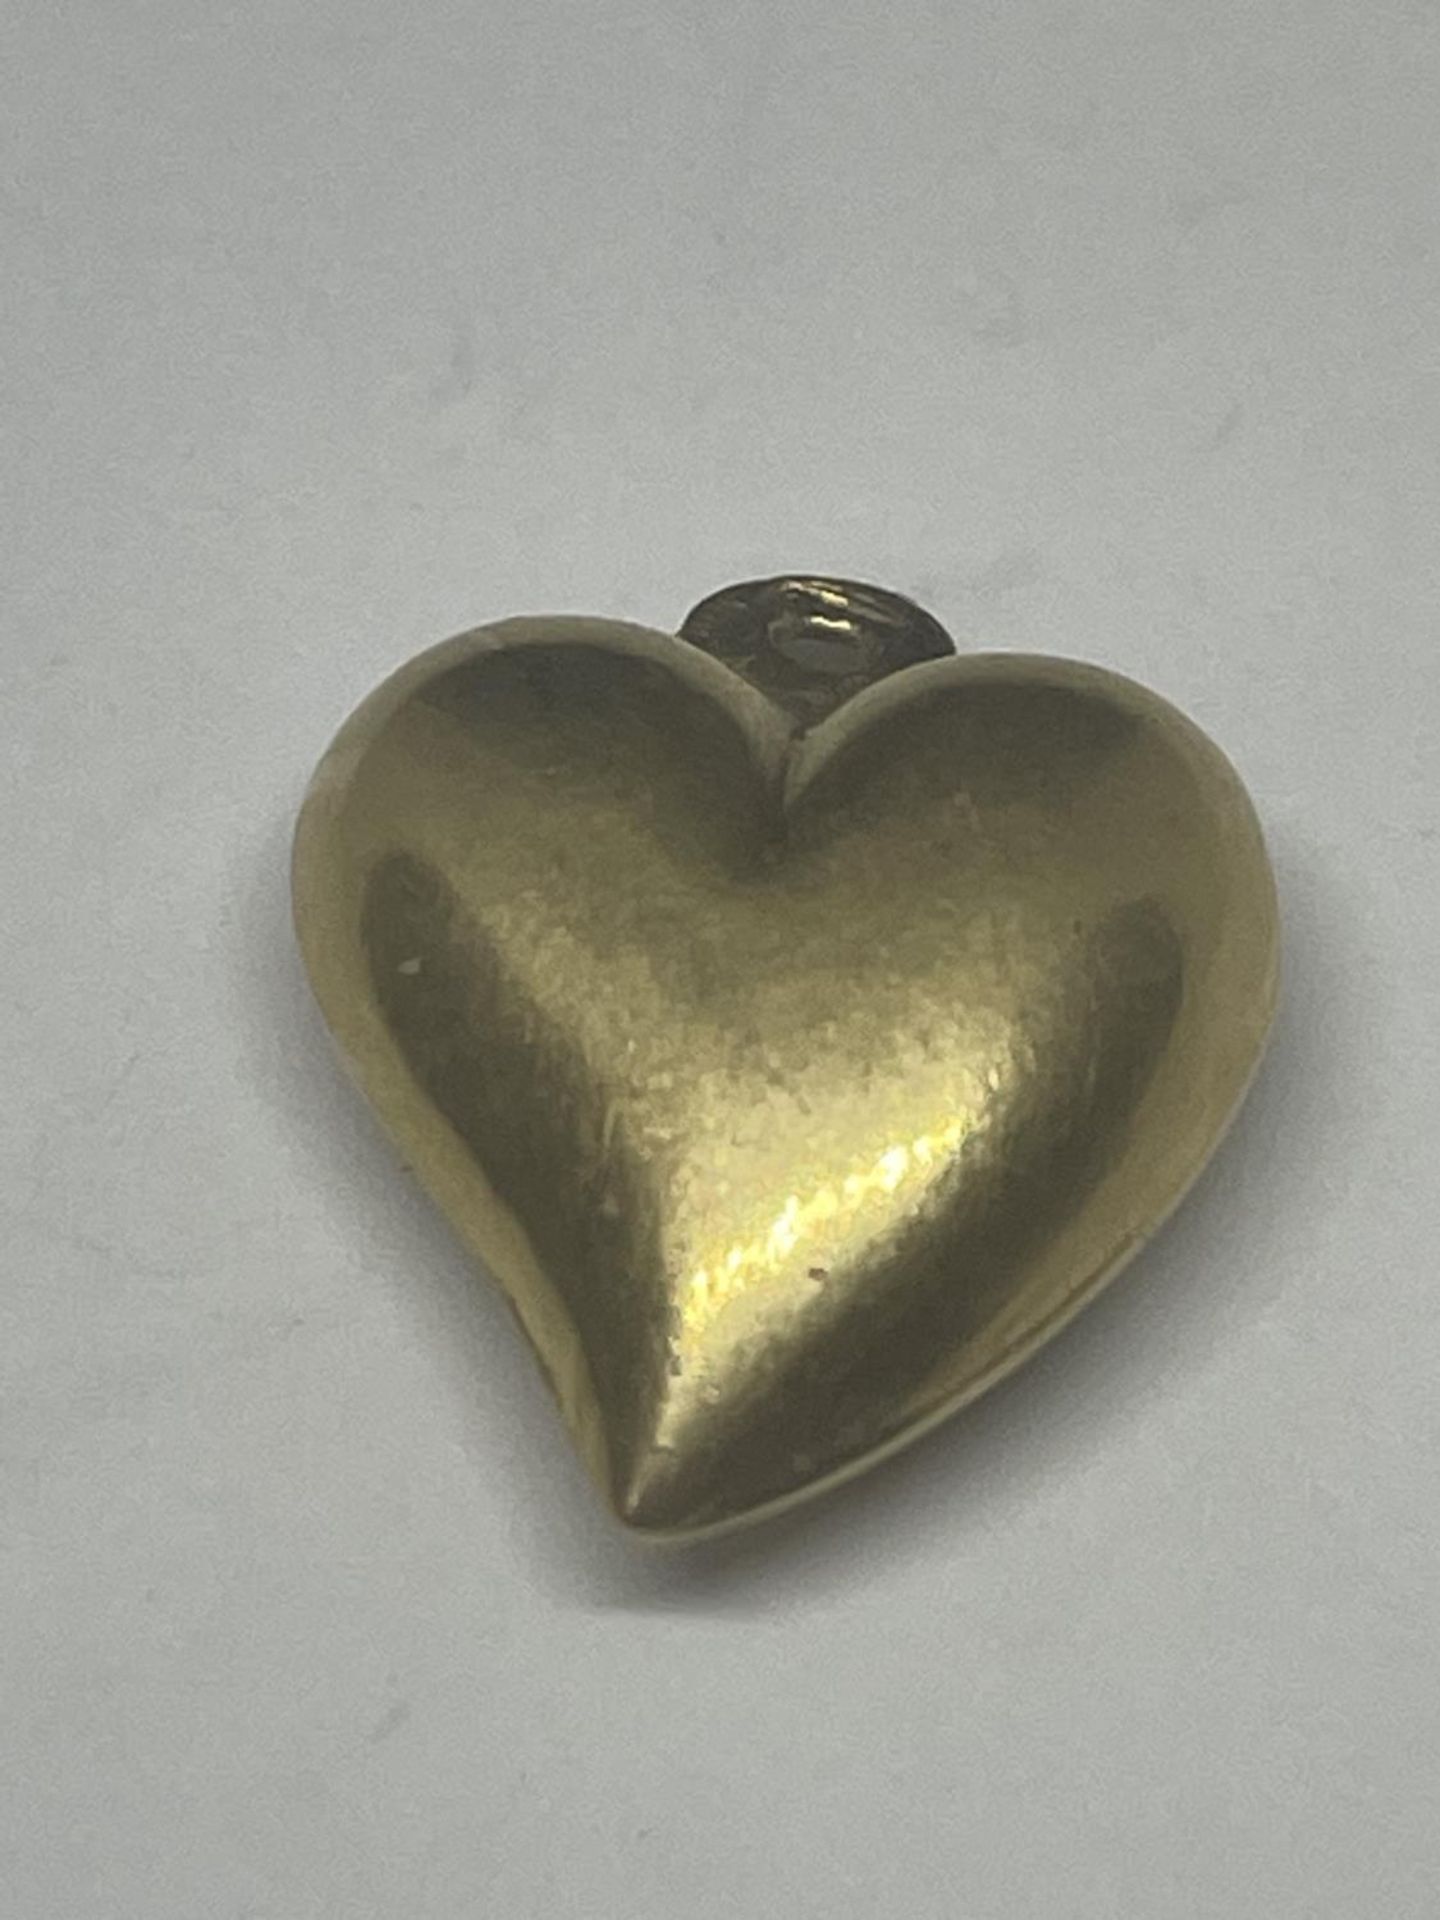 AN 18 CARAT GOLD HEART PENDANT GROSS WEIGHT 1.44 GRAMS - Image 2 of 3